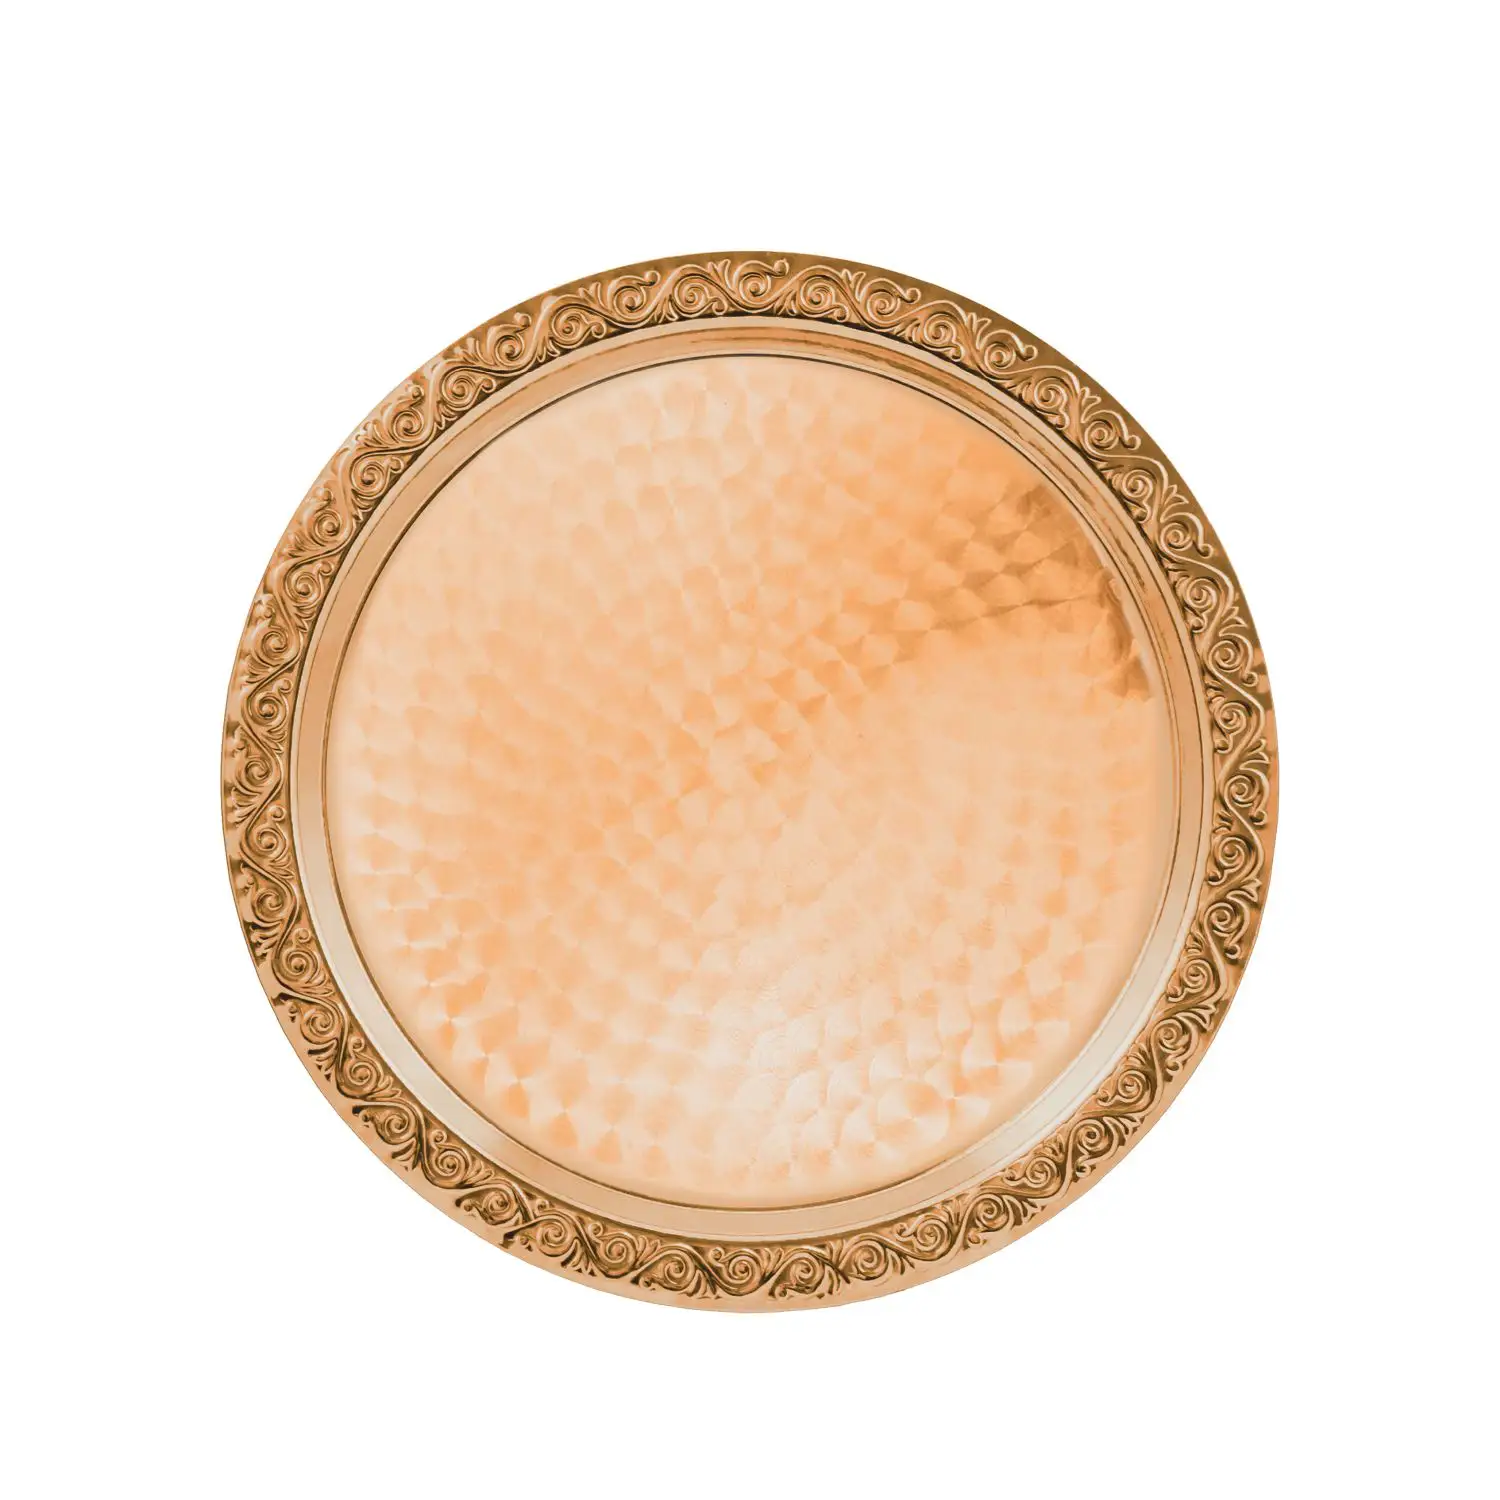 Поднос декоративный круглый с гравированным рисунком медный поднос декоративный круглый медный